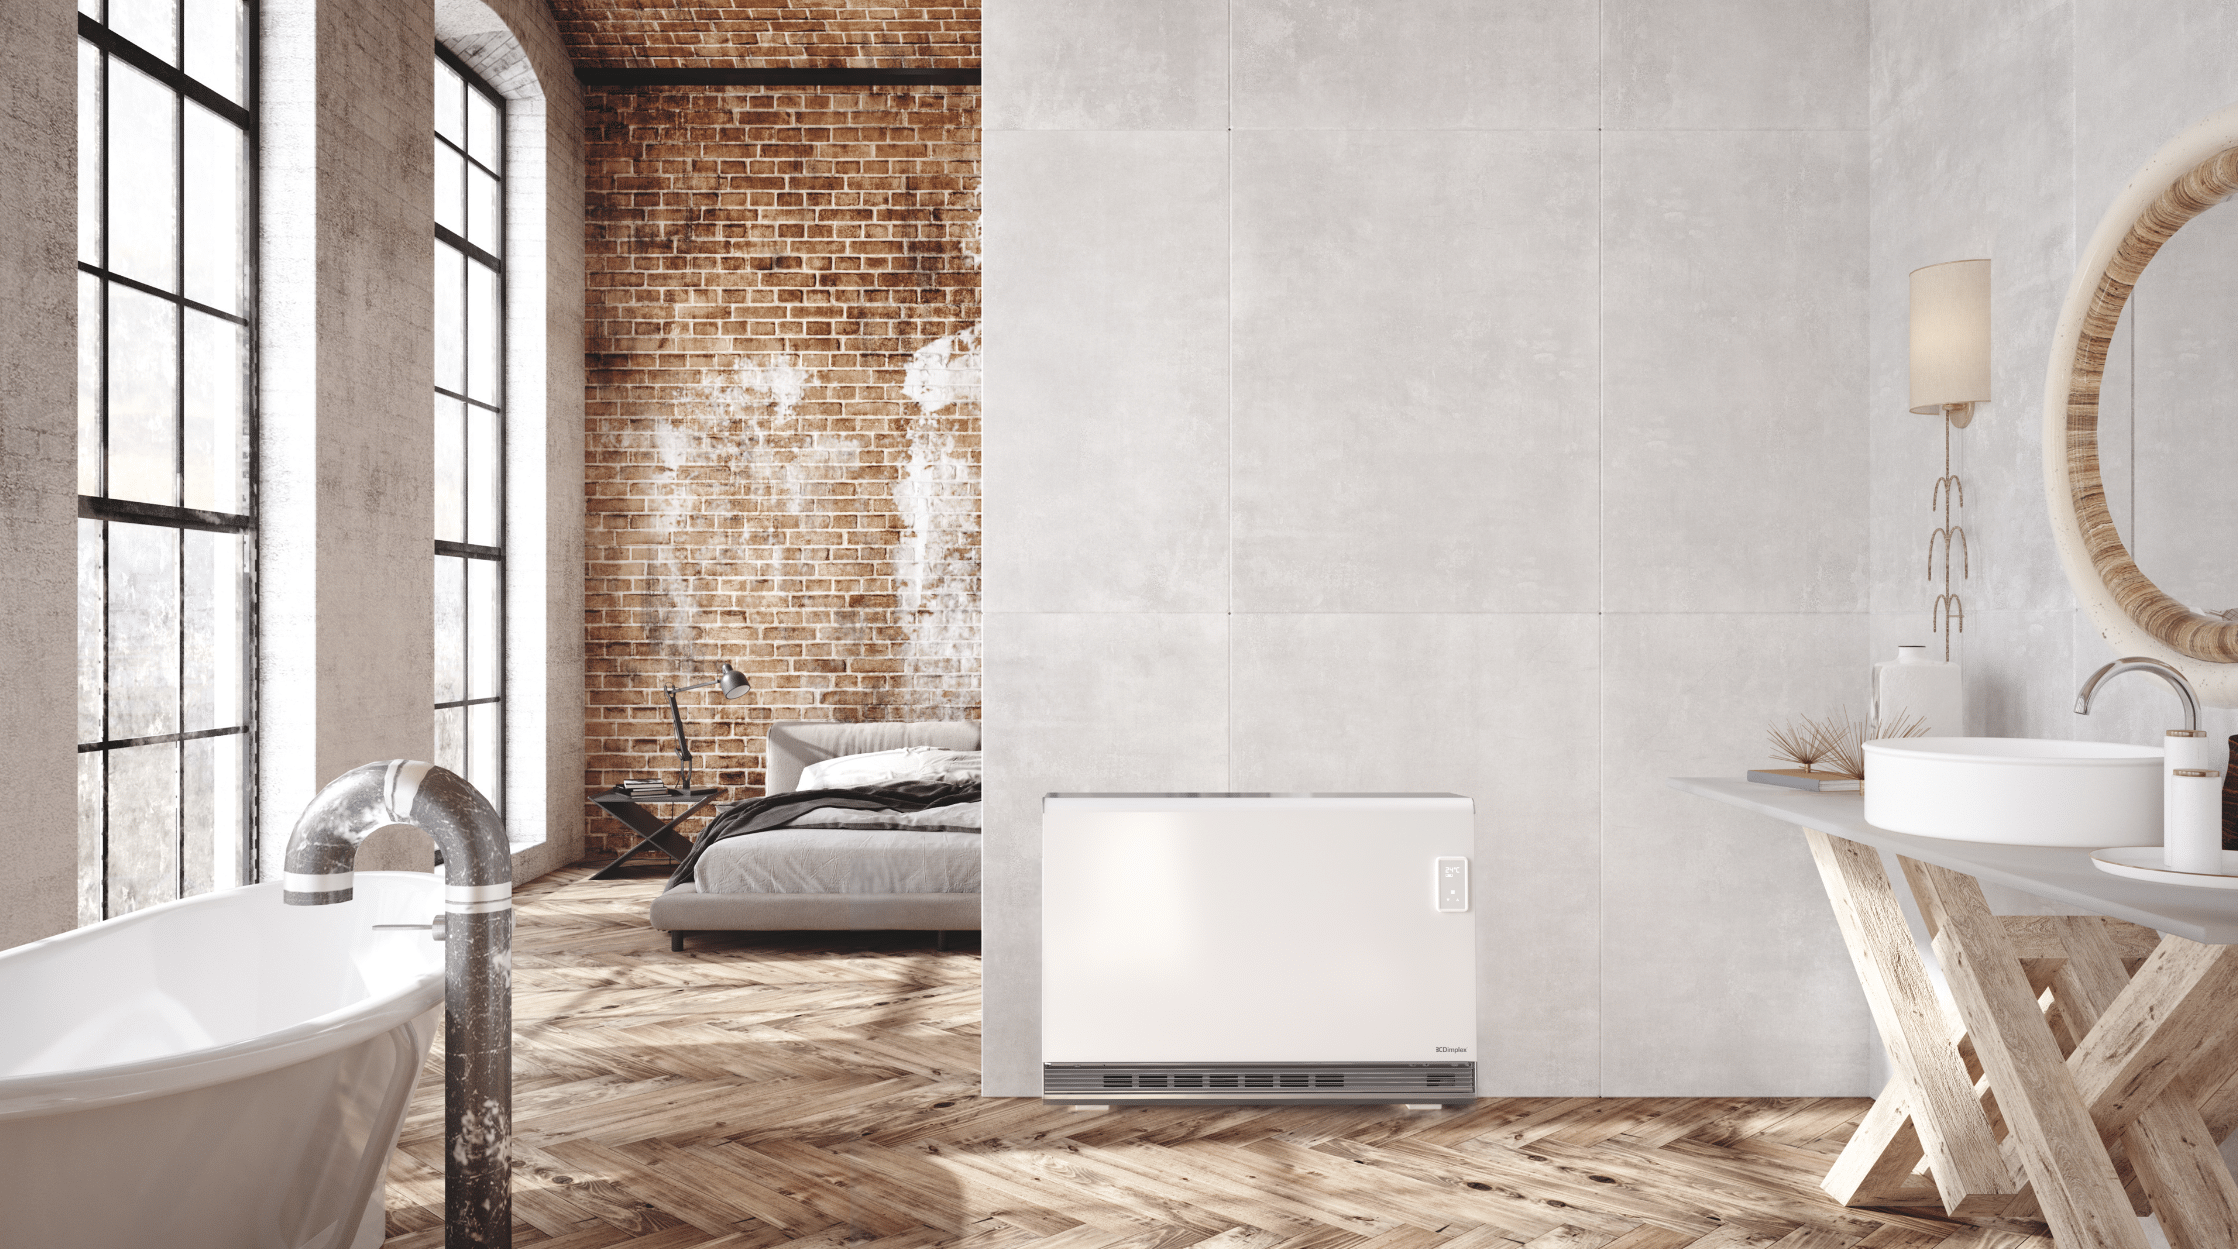 Dimplex zeigt eine offene Loftwohnung mit schönem Holzboden, Schlafbereich und Badezimmer mit einer freistehenden Badewanne mit Rohr im Industrial Look und einer weissen, eckigen Wärmepumpe an der Wand.